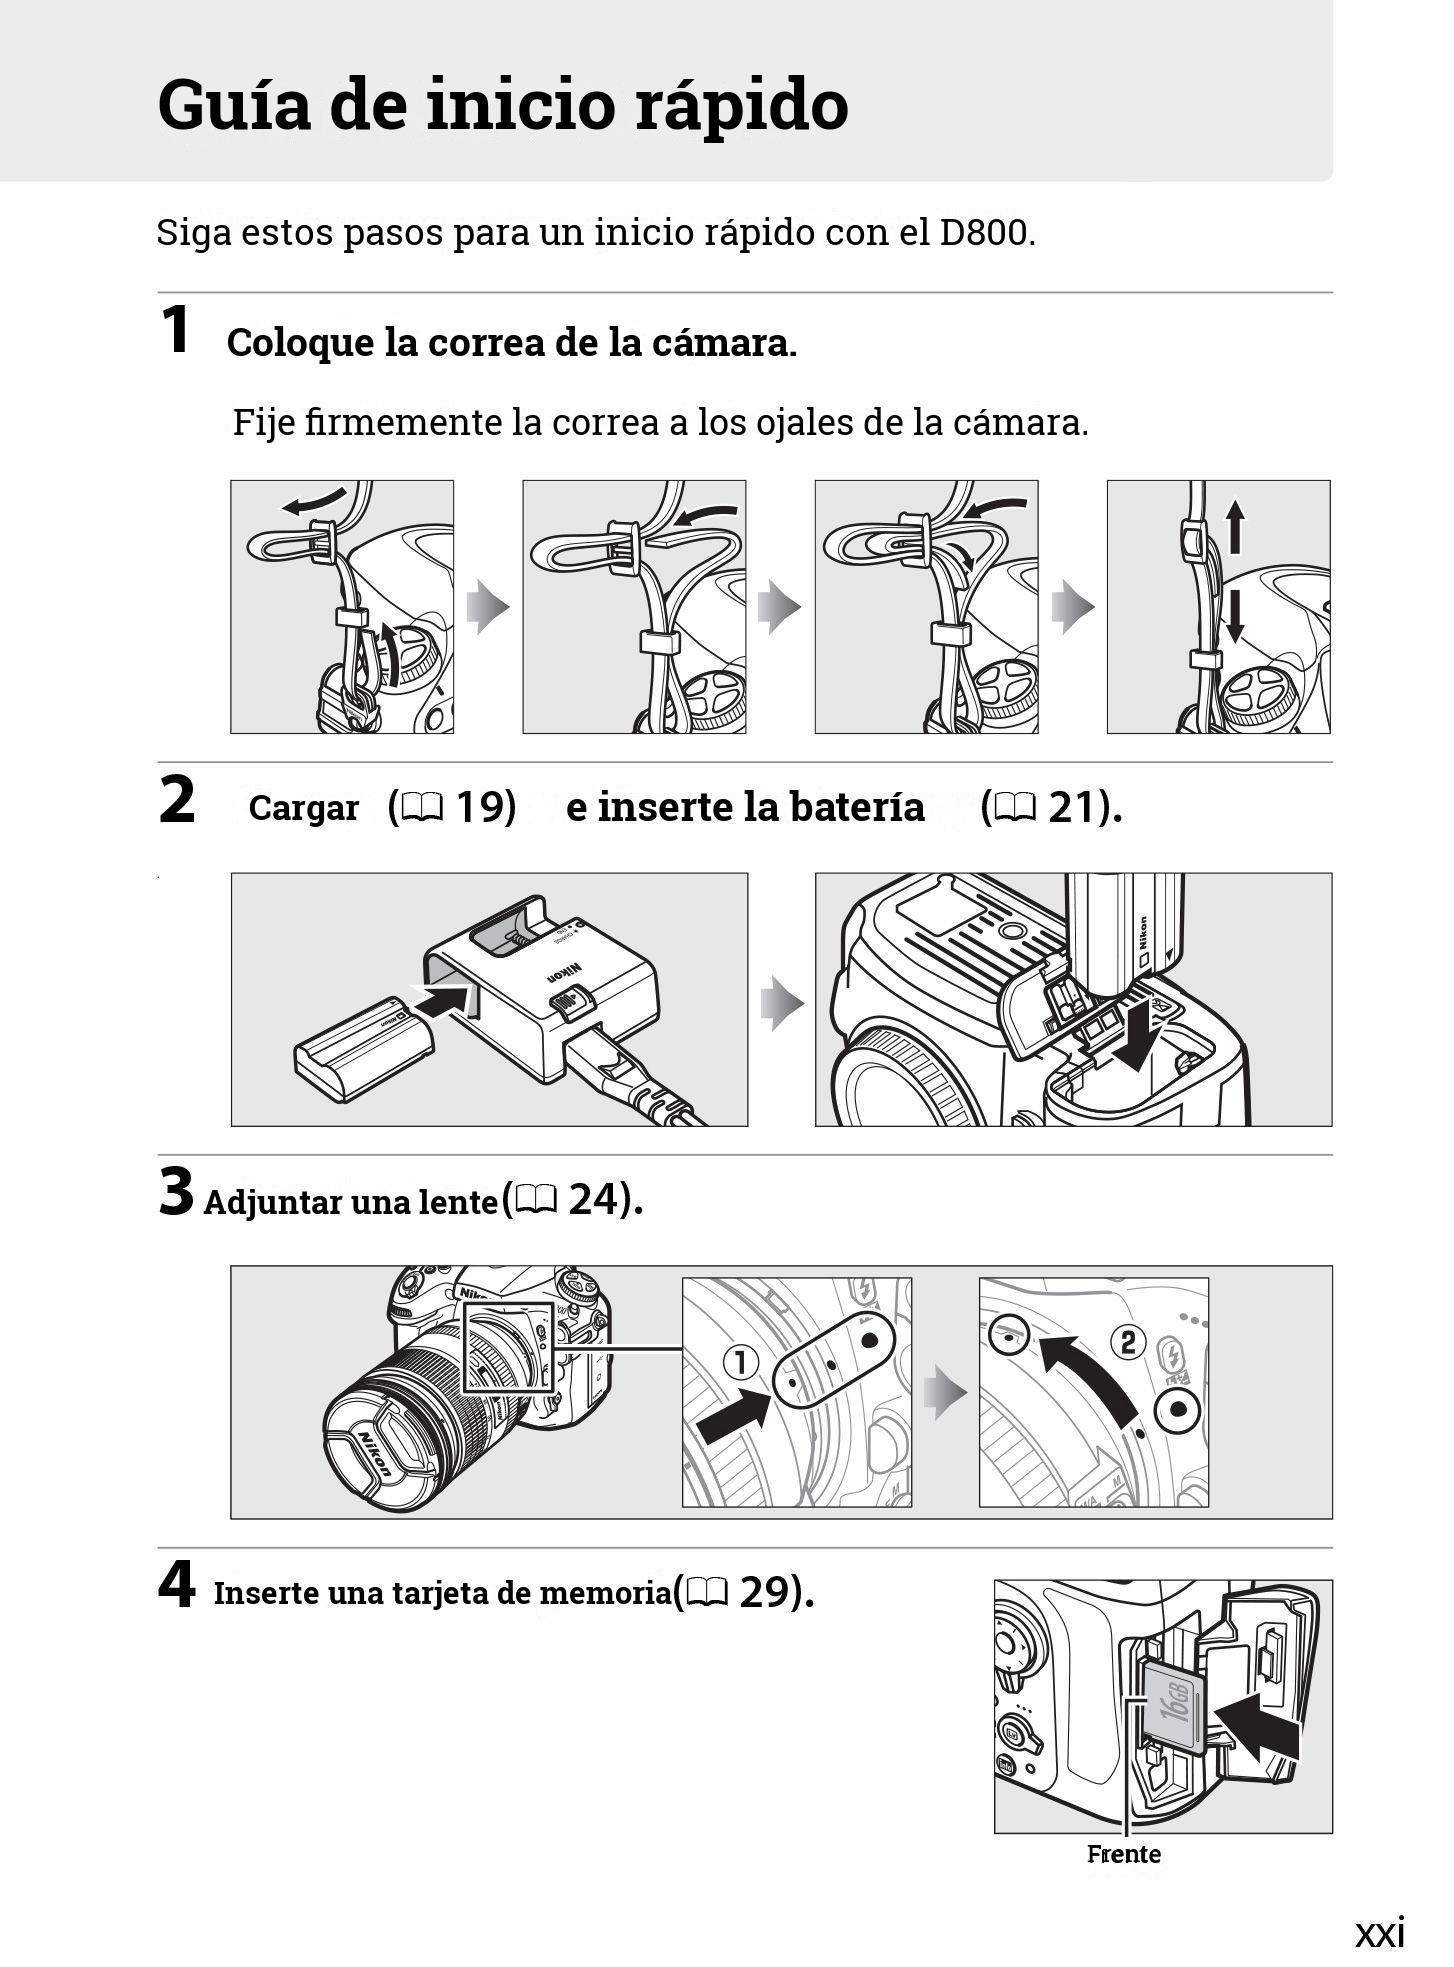 Original instructions Tradução do manual original